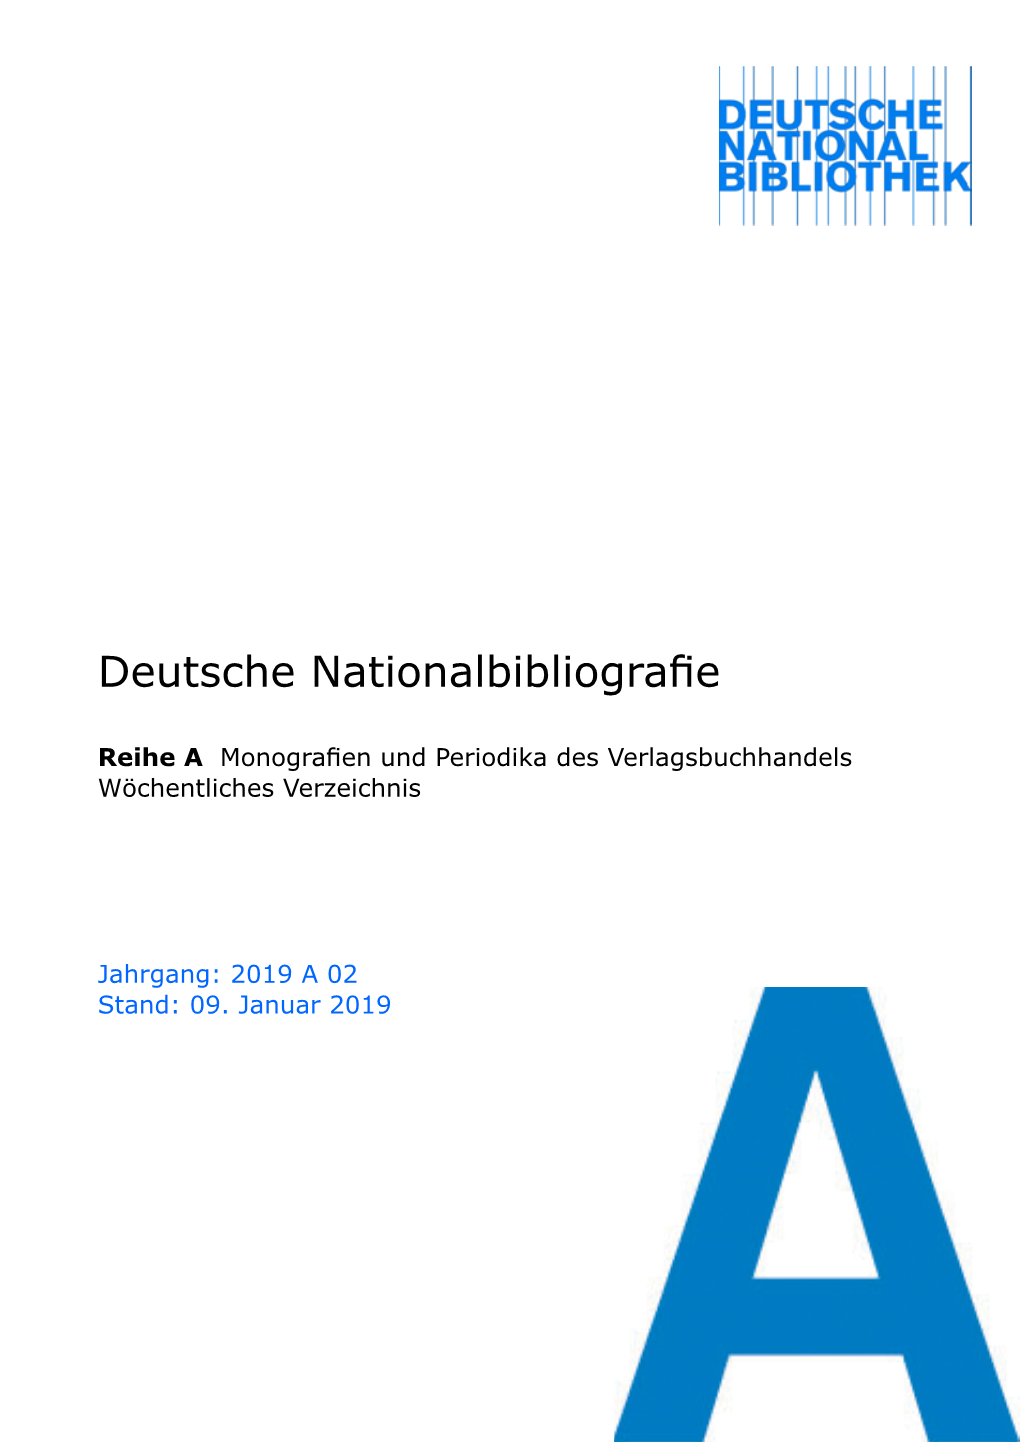 Deutsche Nationalbibliografie 2019 a 02